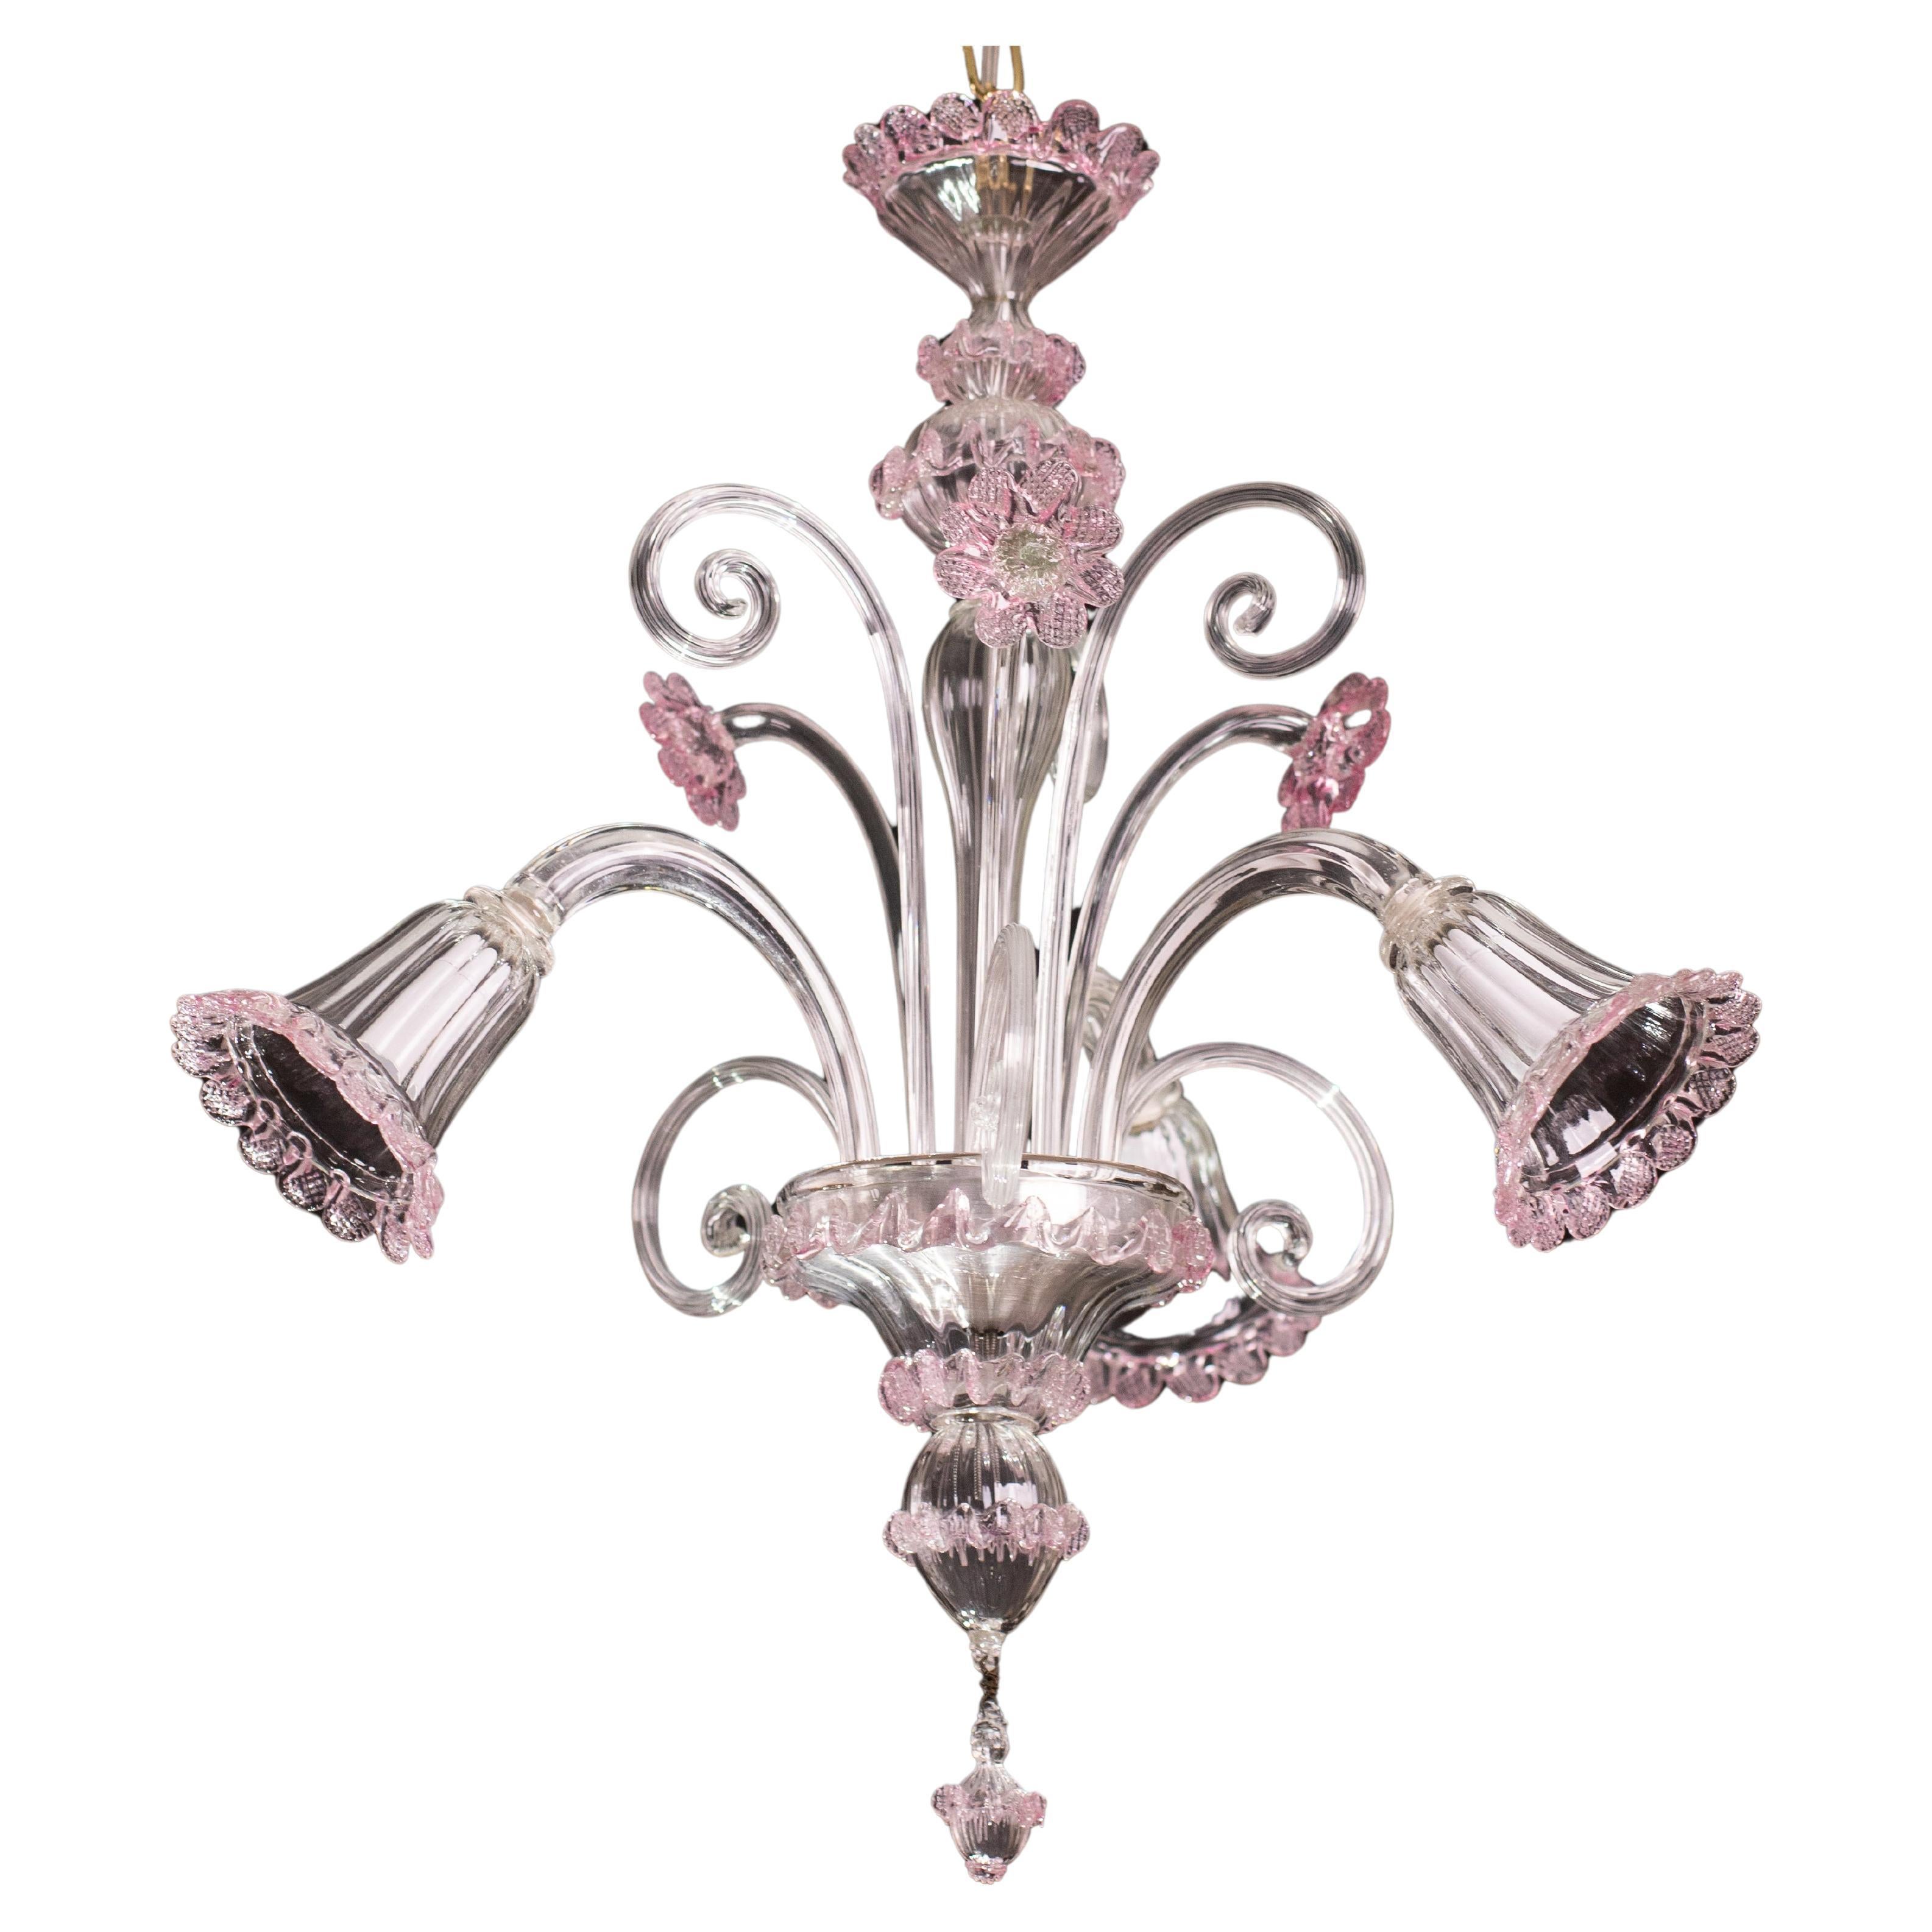 Schöner venezianischer Kronleuchter, rosa Muranoglas, 1950er Jahre